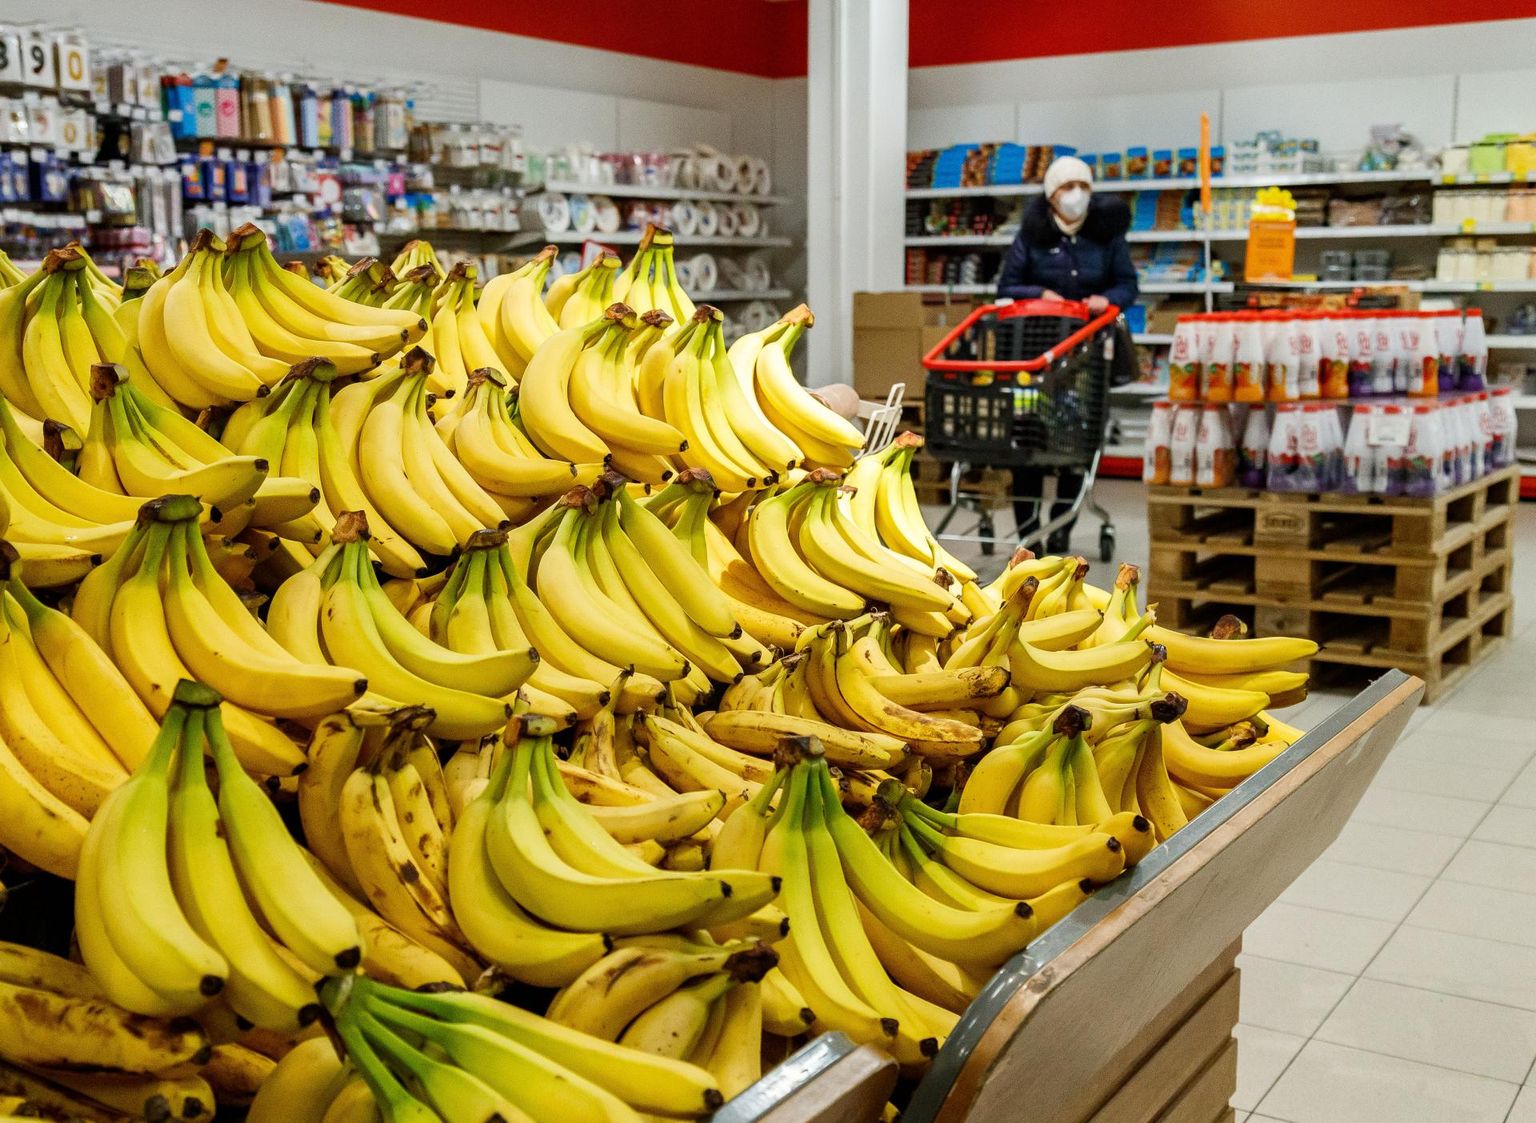 Banaan on tänapäeval kättesaadav kõigile. Nõukogude ajal müüdi banaane Rakvere turul hinnaga 2 rubla tükk, pensioni eest sai osta 40 banaani.